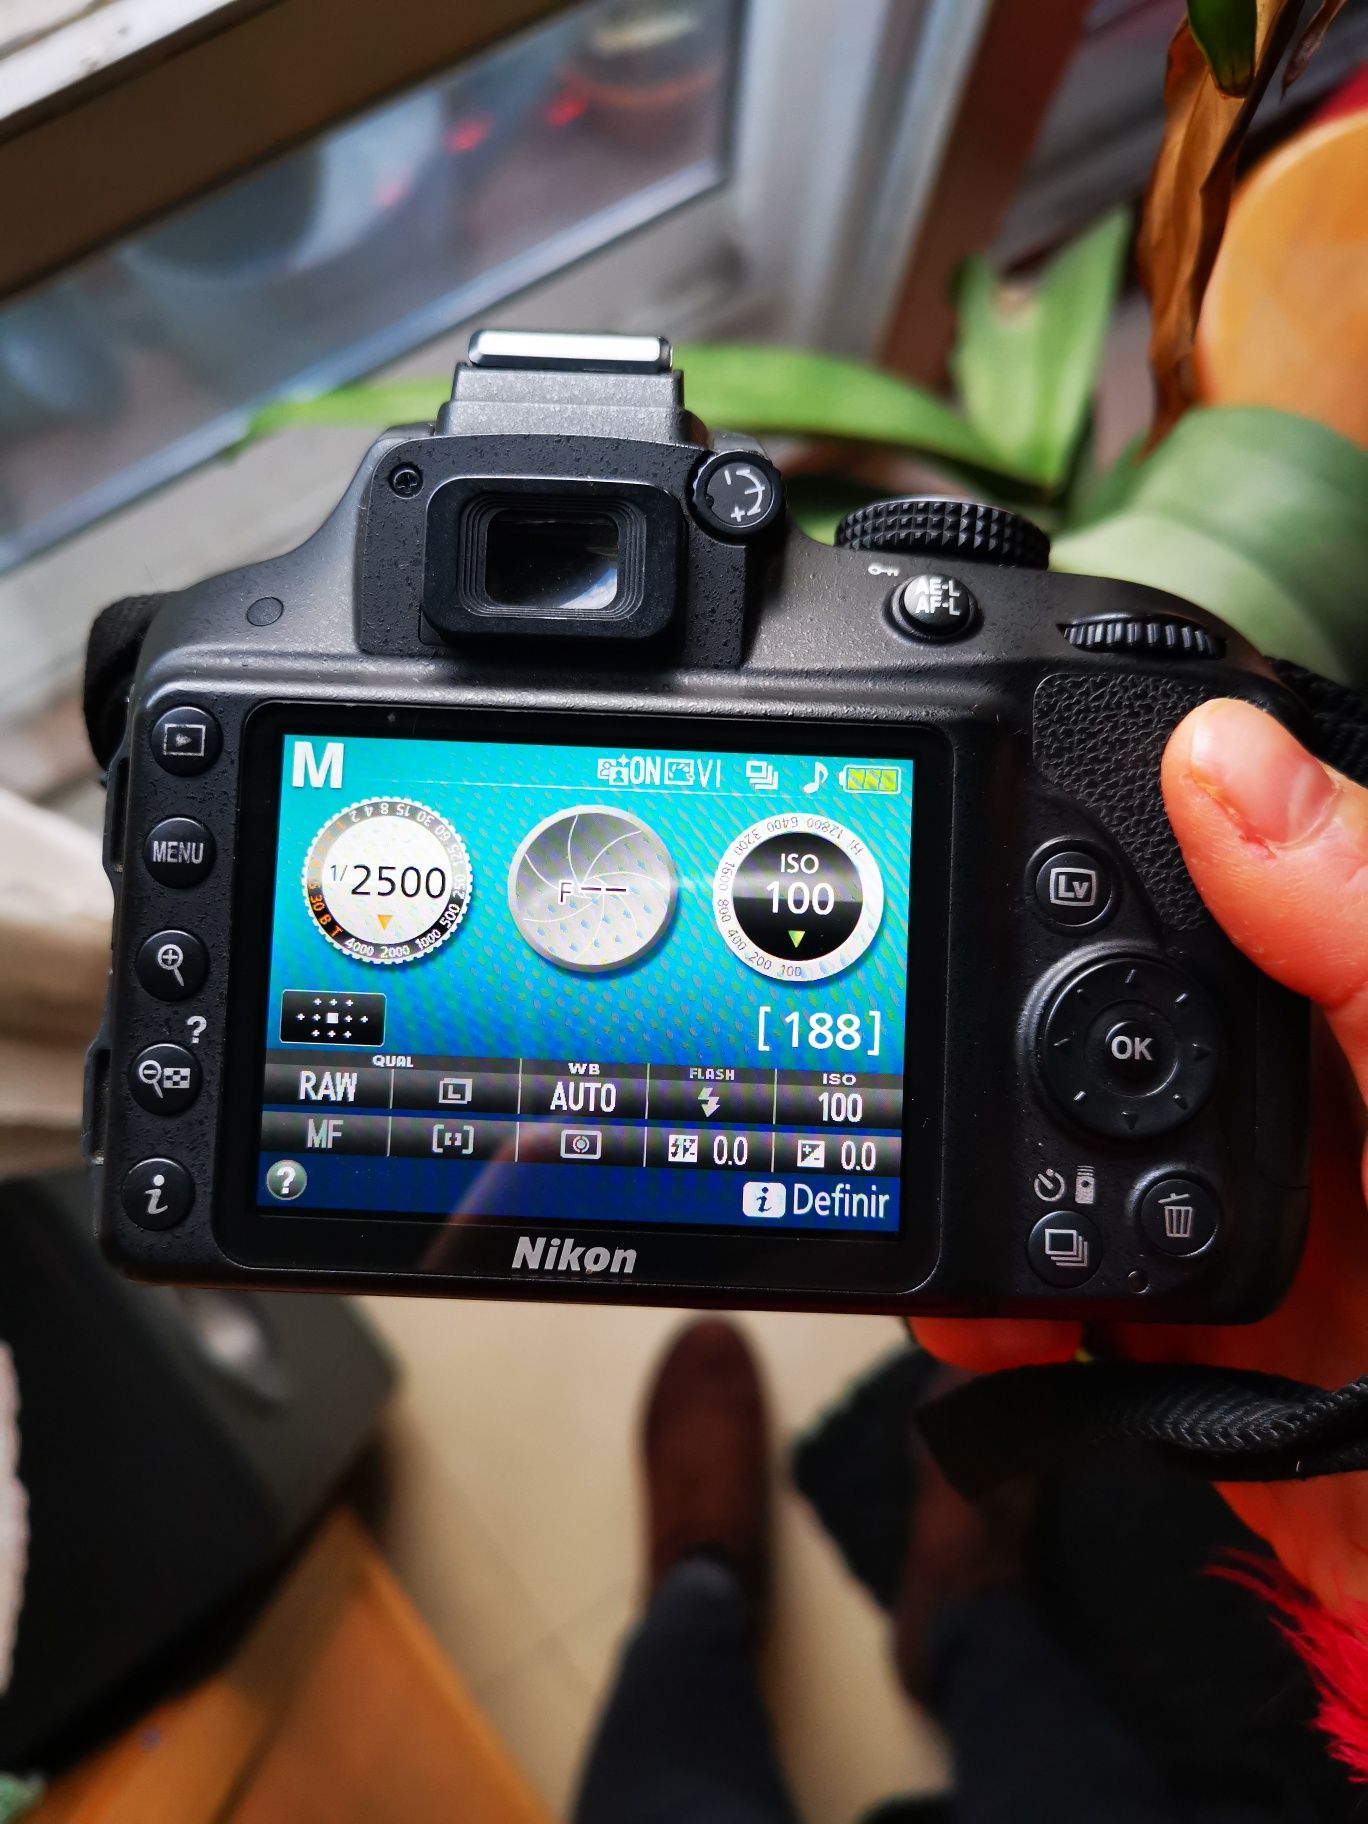 Máquina fotográfica reflex Nikon D 3300 em excelente estado, pouco uso